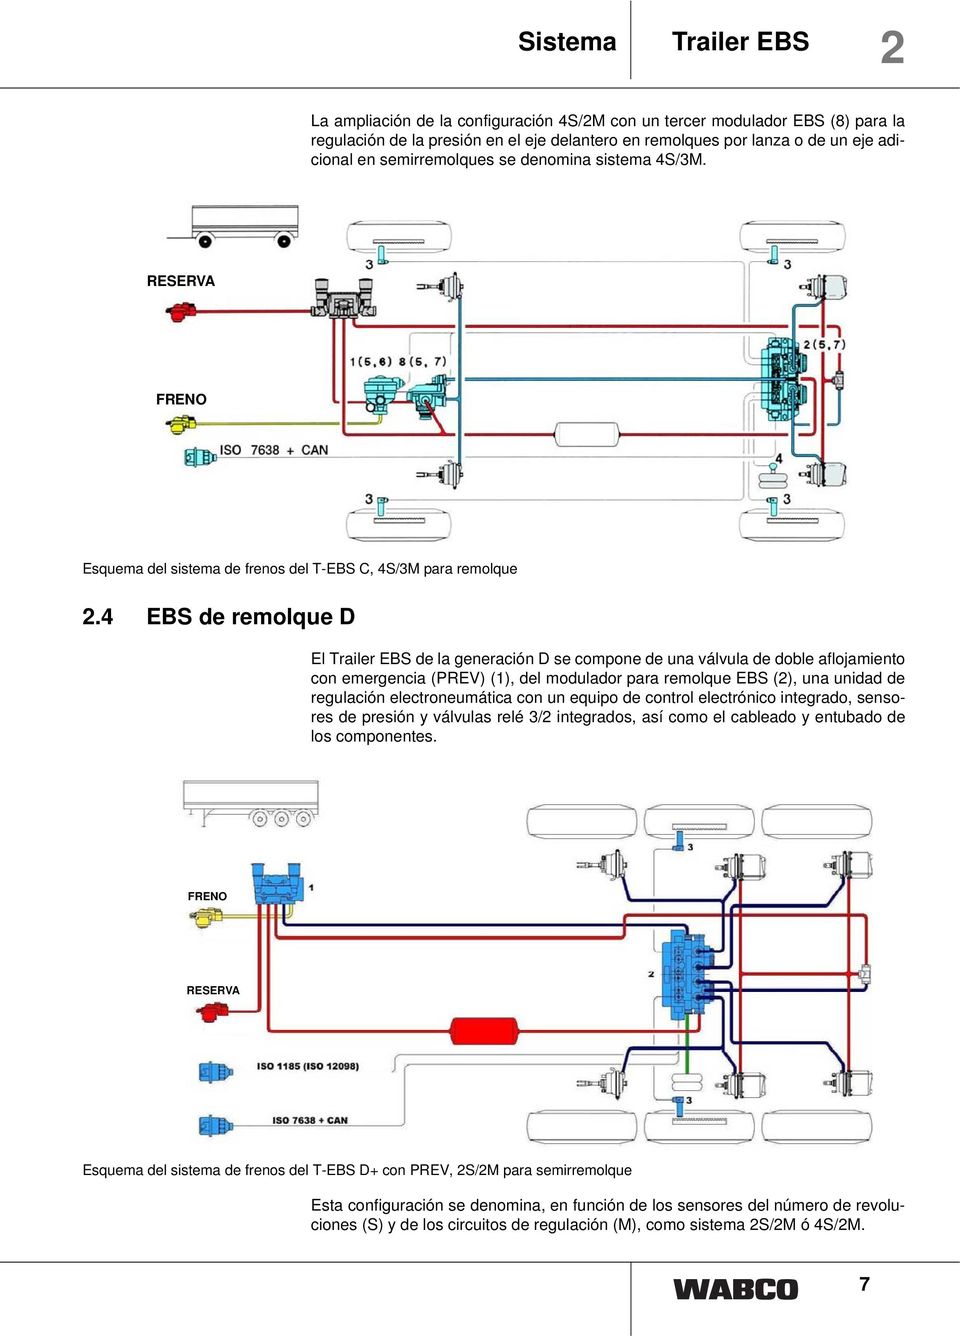 4 EBS de remolque D El Trailer EBS de la generación D se compone de una válvula de doble aflojamiento con emergencia (PREV) (1), del modulador para remolque EBS (2), una unidad de regulación